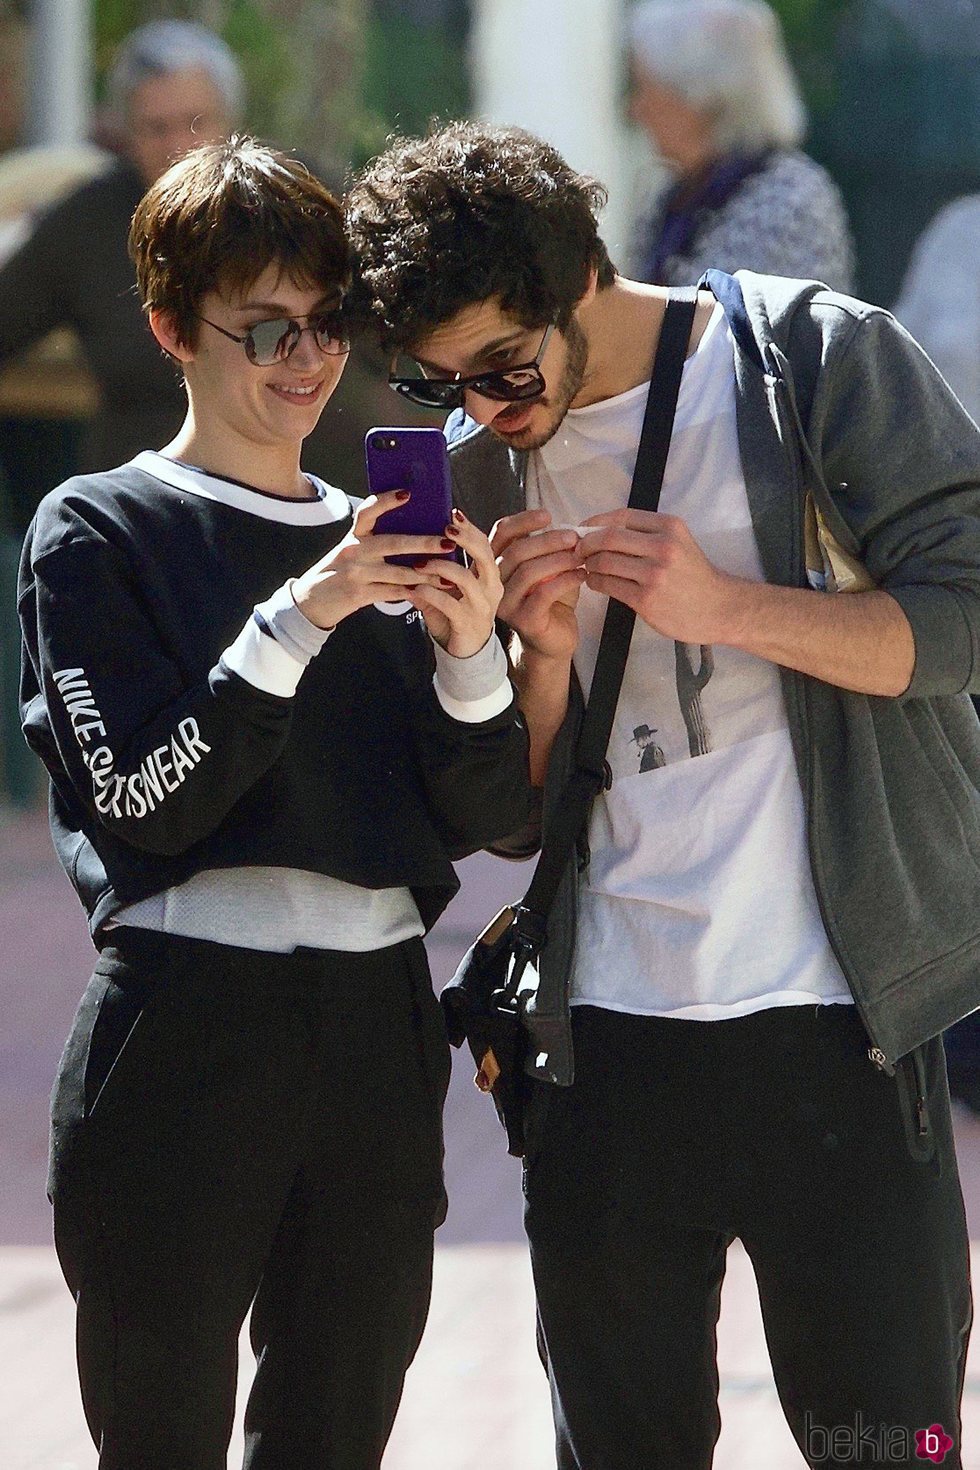 Chino Darín y Úrsula Corberó se parten de risa mientras miran sus móviles en Málaga